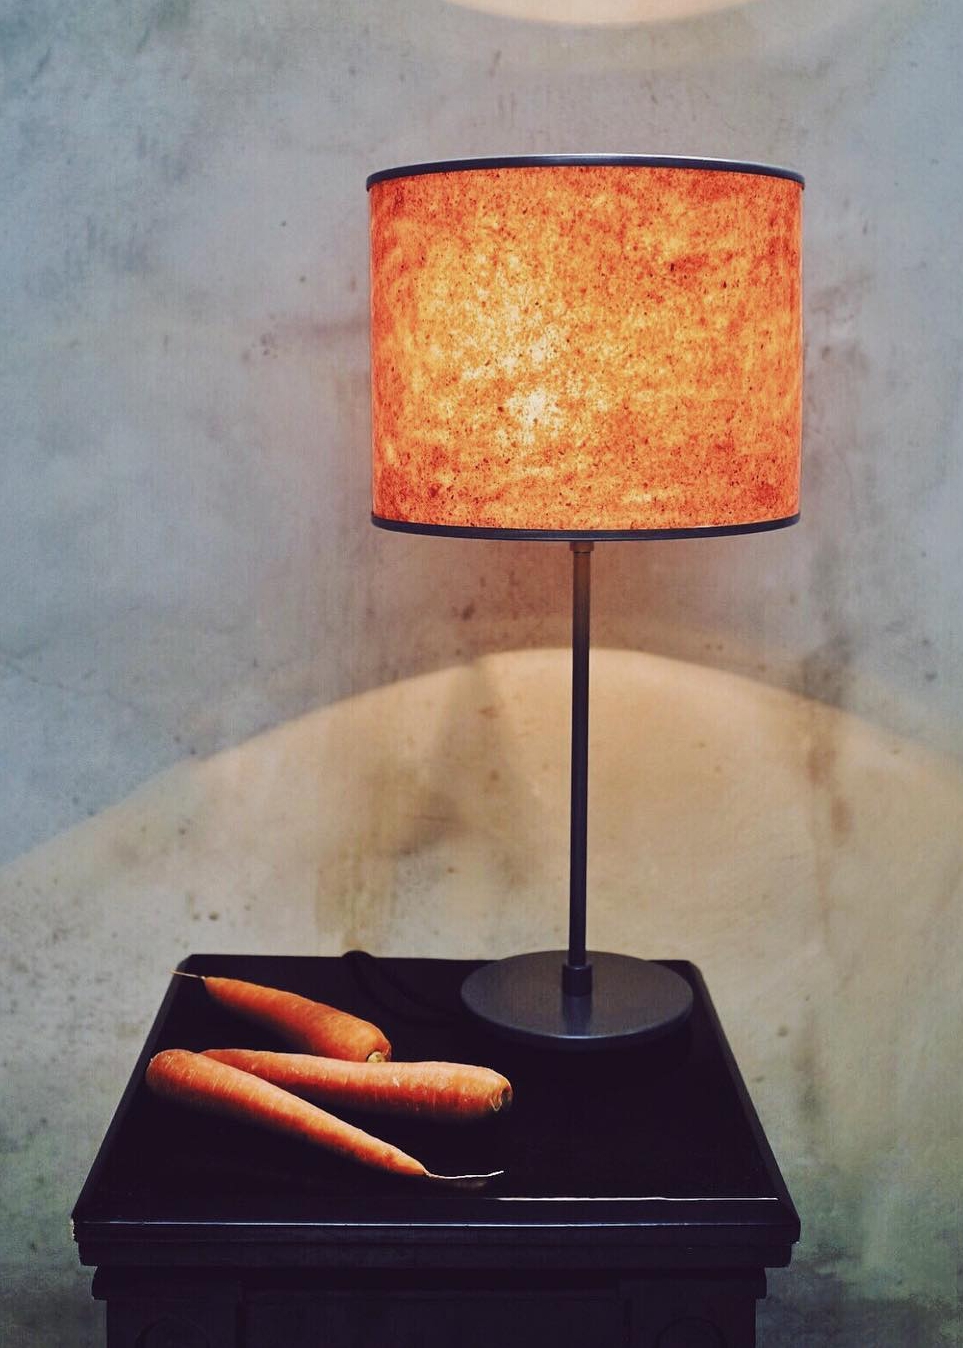 Chiếc đèn làm từ cà rốt